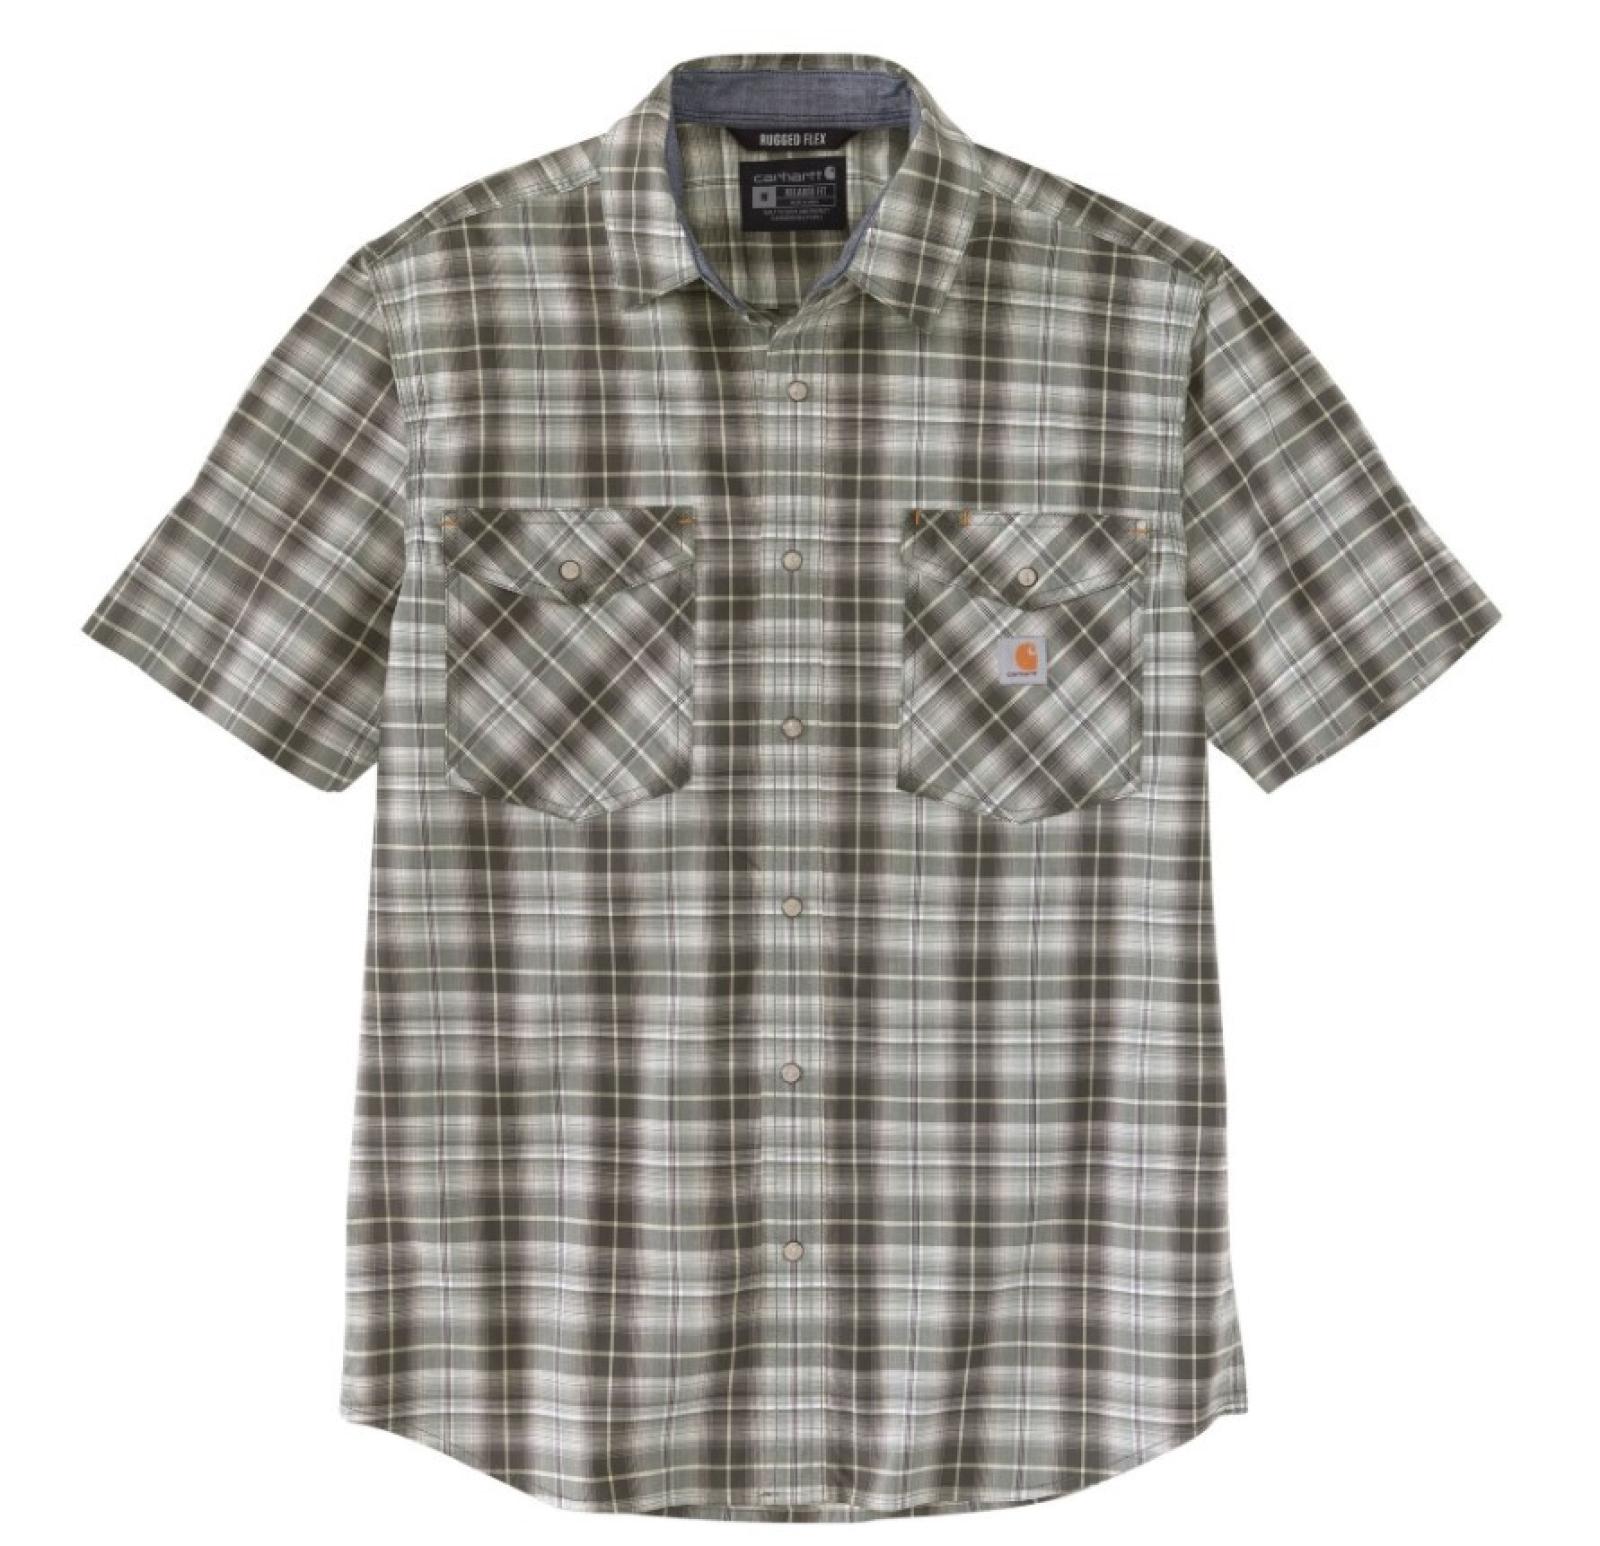 Carhartt Men's Rugged Flex Relaxed Fit Lightweight Snap-Front Short-Sleeve Plaid Shirt